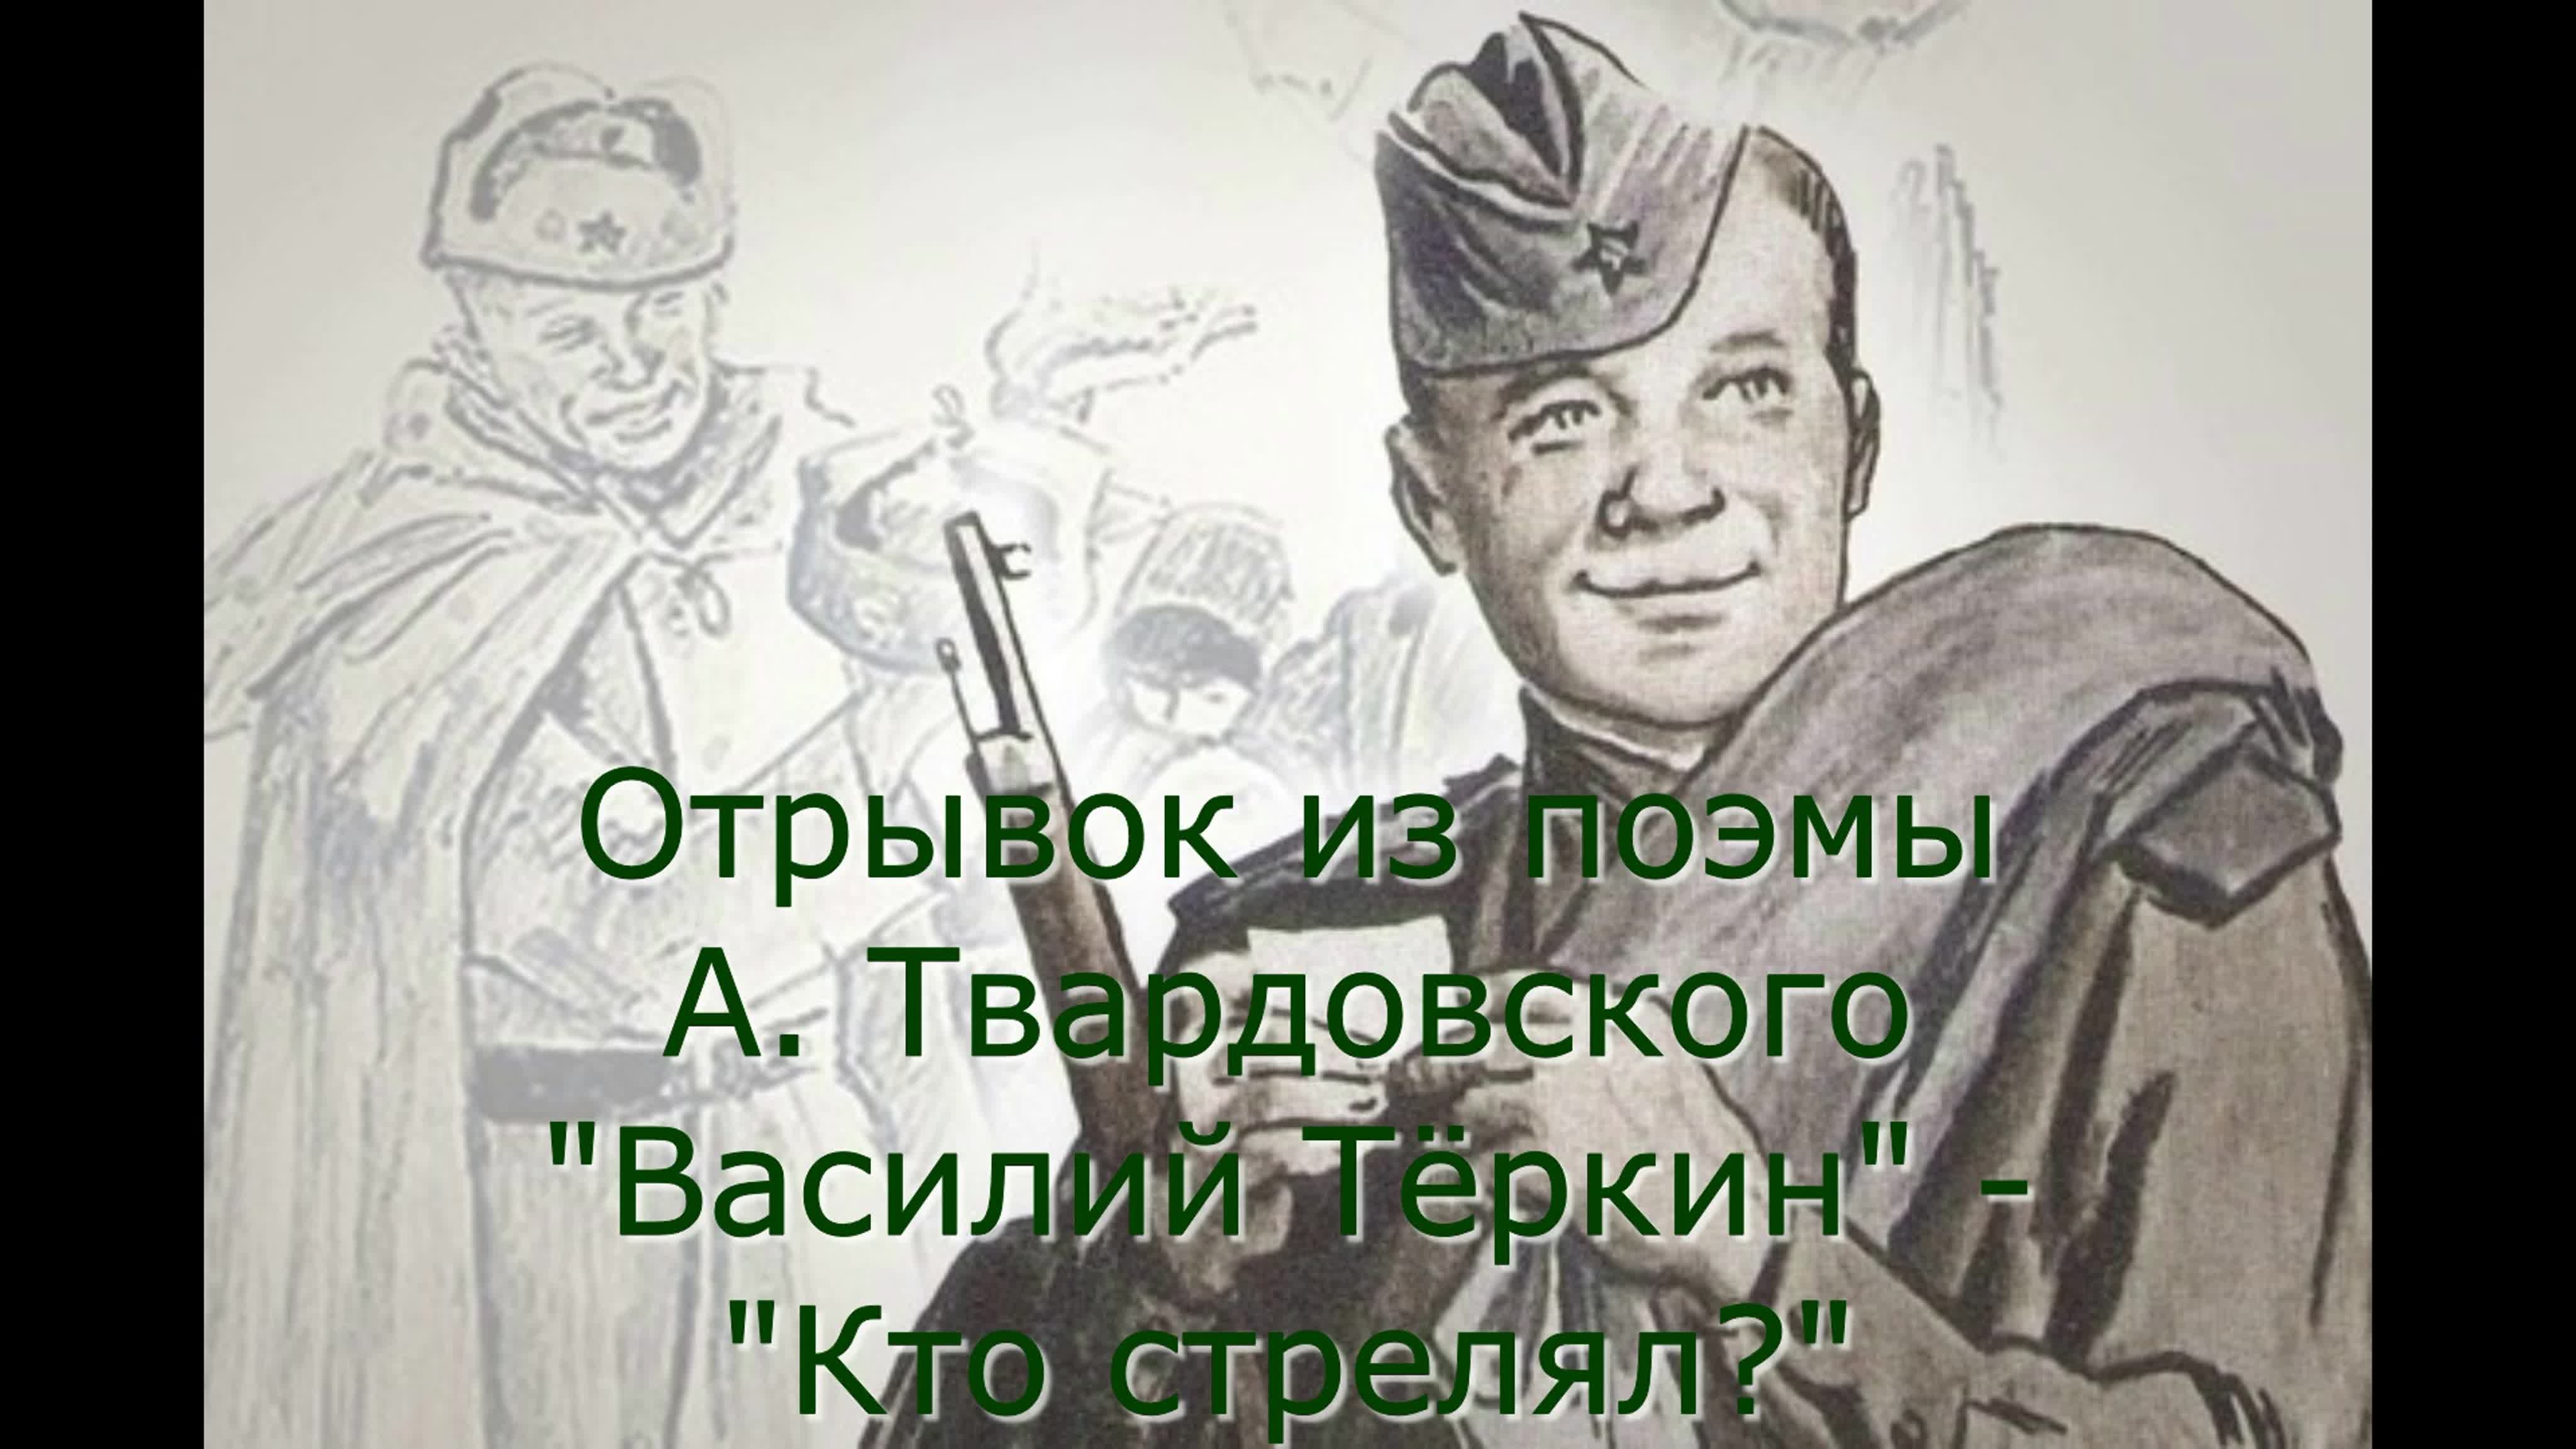 Прототип теркина. Портрет Василия Теркина. Отрывок из поэмы Твардовского.